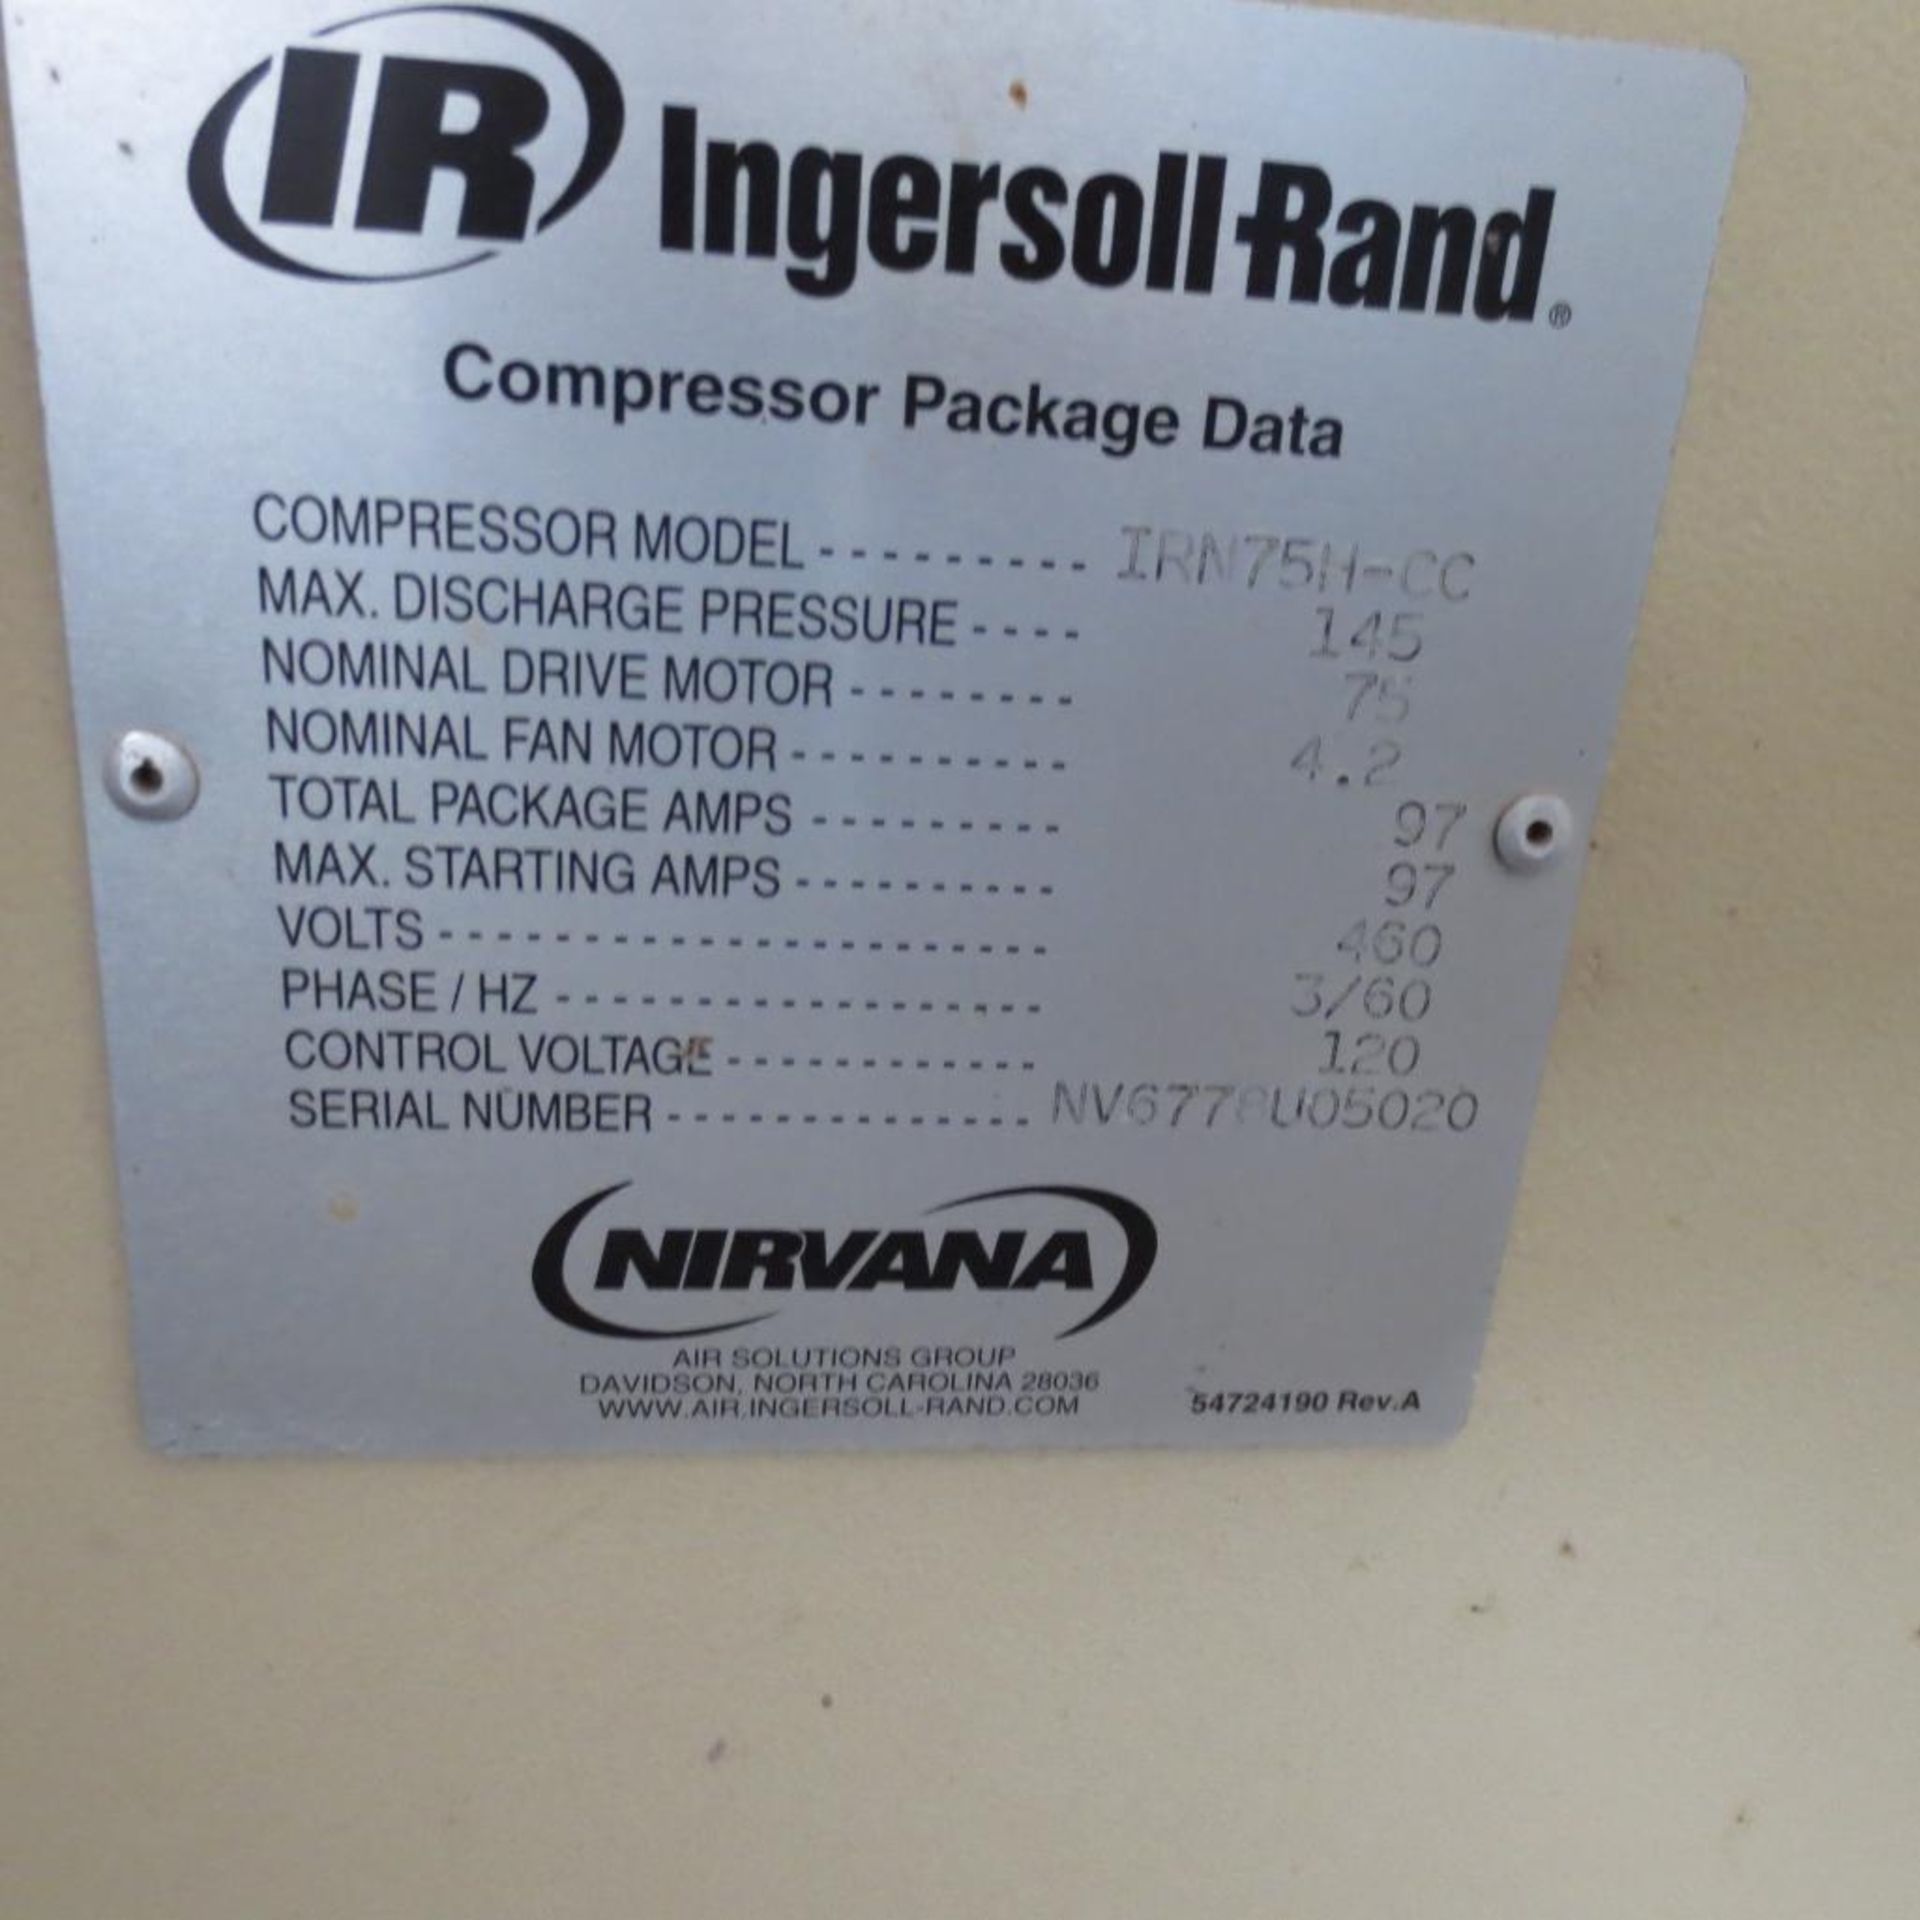 Ingersoll - Rand Model IRN75H-CC Rotary Screw Air Compressor, 75 HP, Year 2005, S/N NV6778U05020 - Image 2 of 5